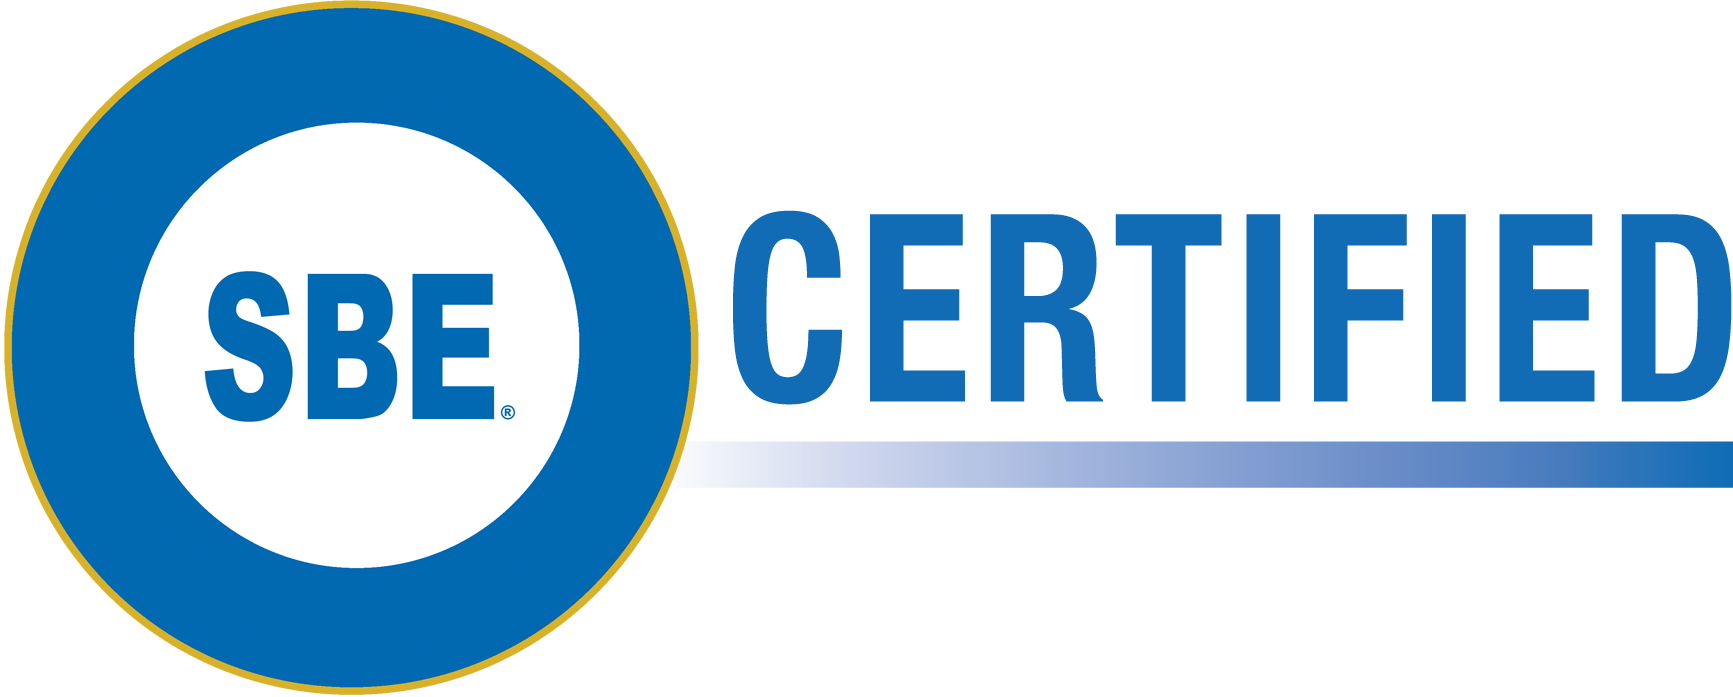 sbe certified logo #39481